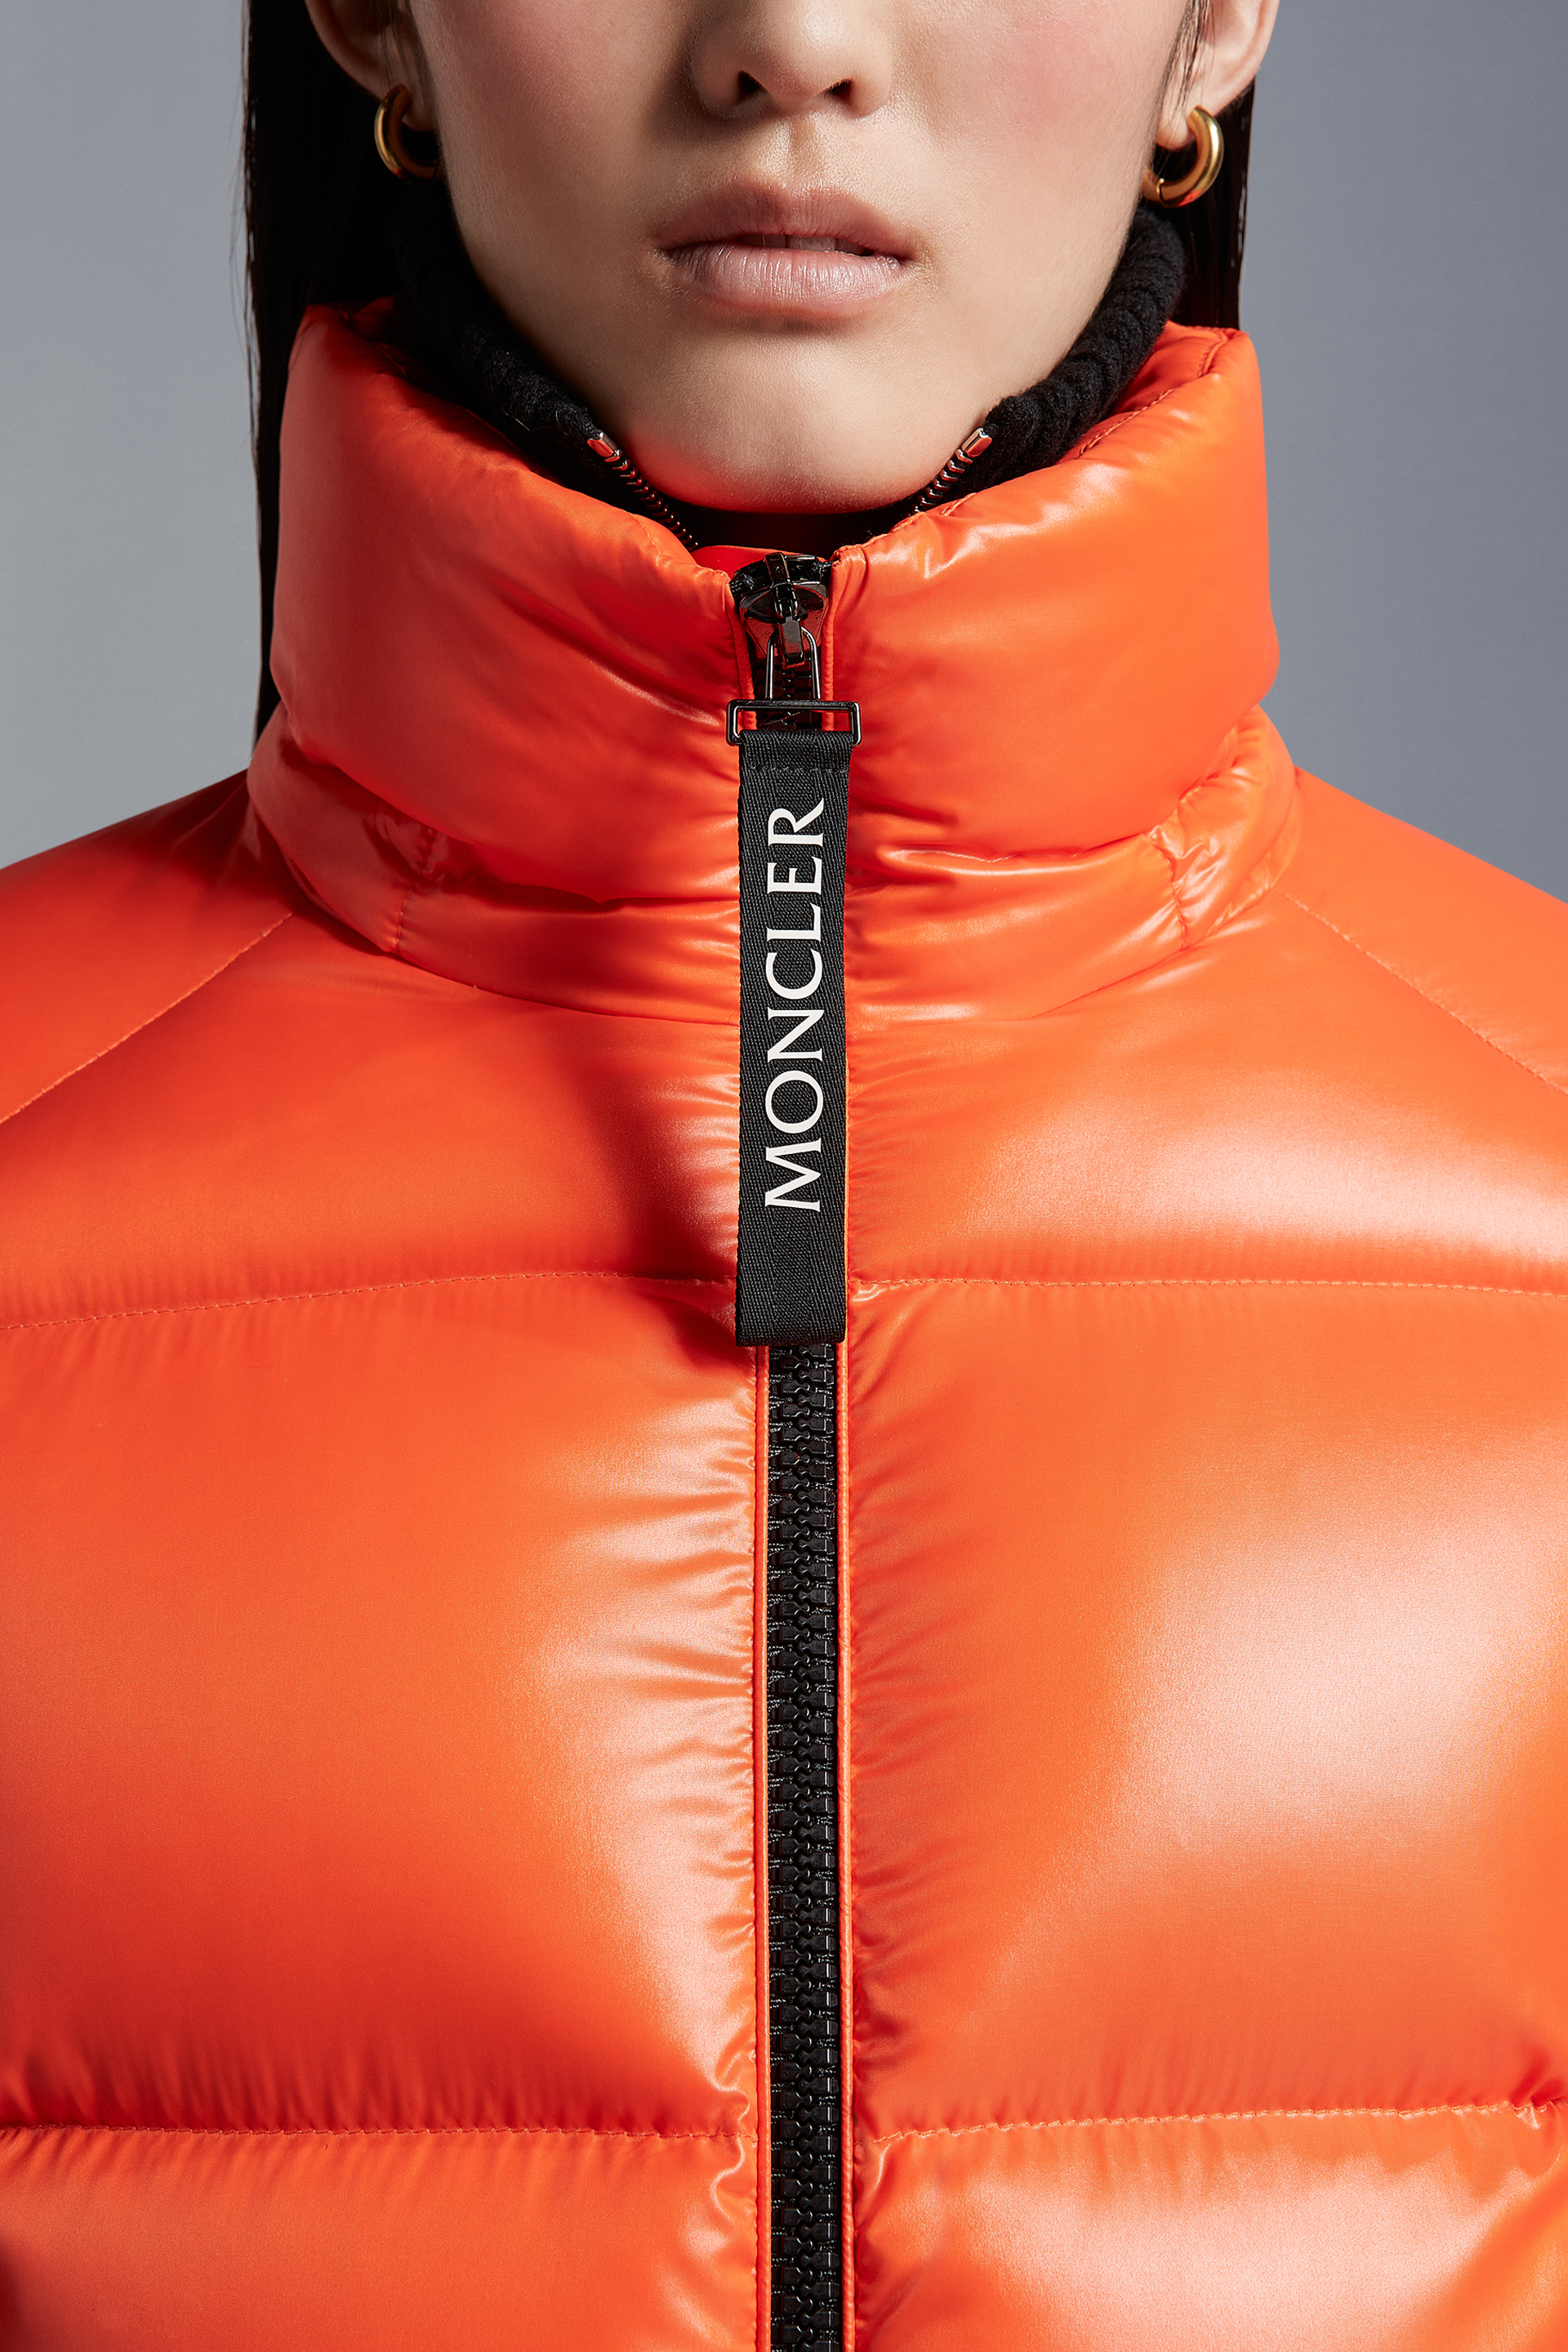 Dinarka冬季短款女士羽绒服夹克外套亮橙色– 短款羽绒服– 女装| Moncler 